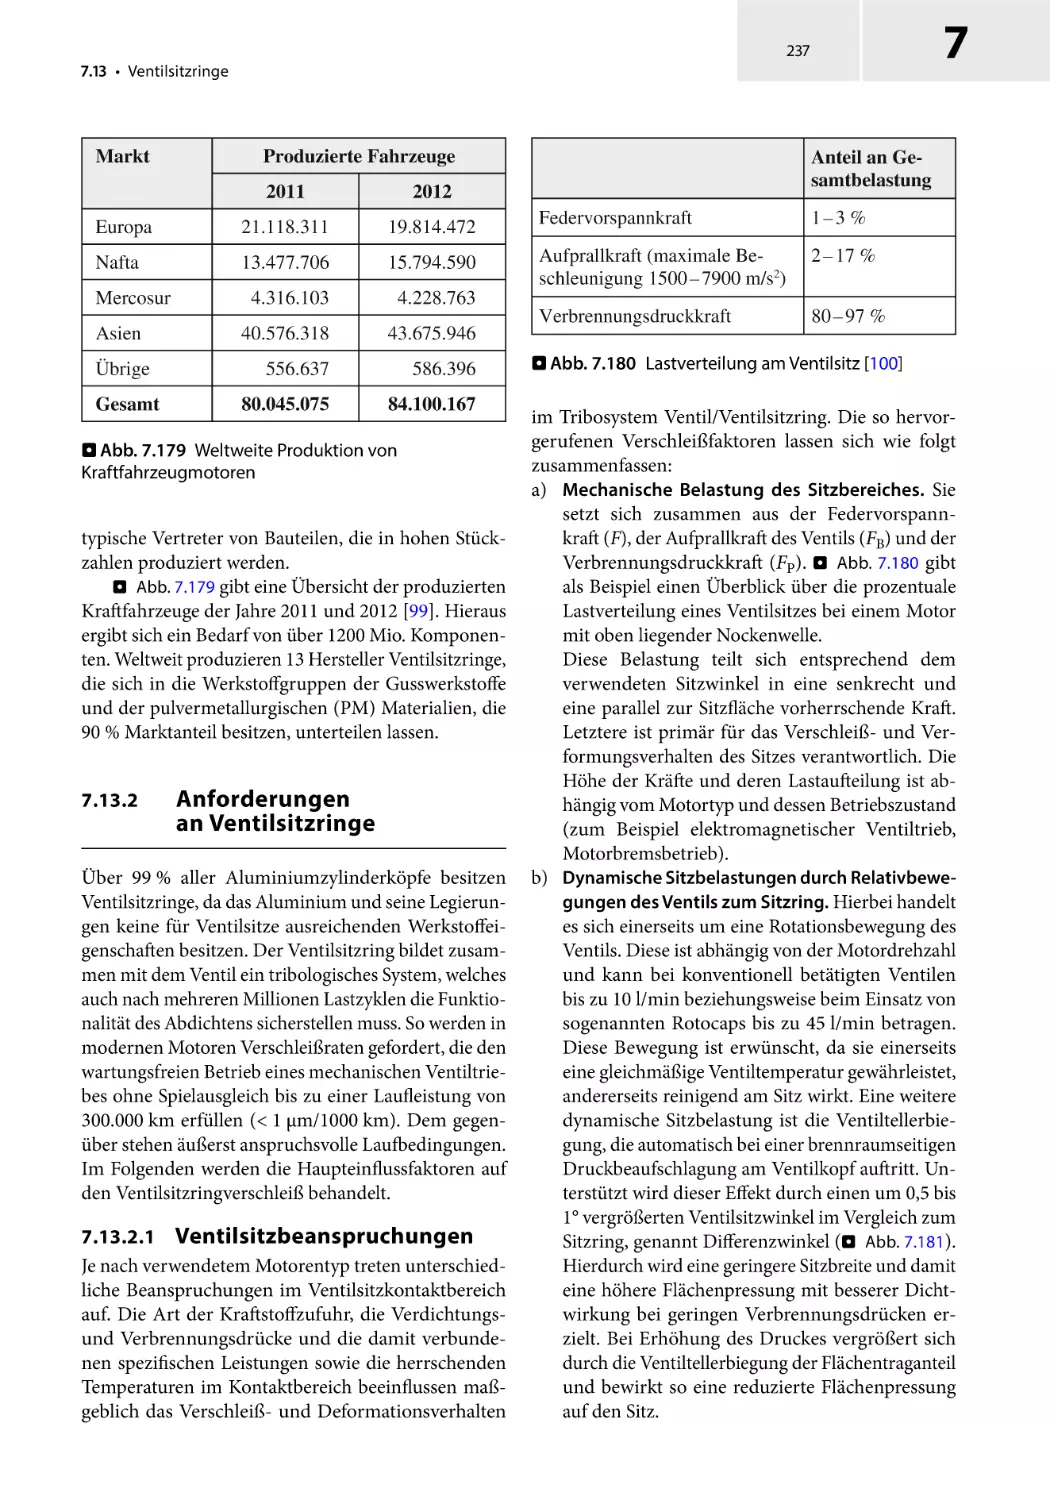 7.13.2 Anforderungen an Ventilsitzringe